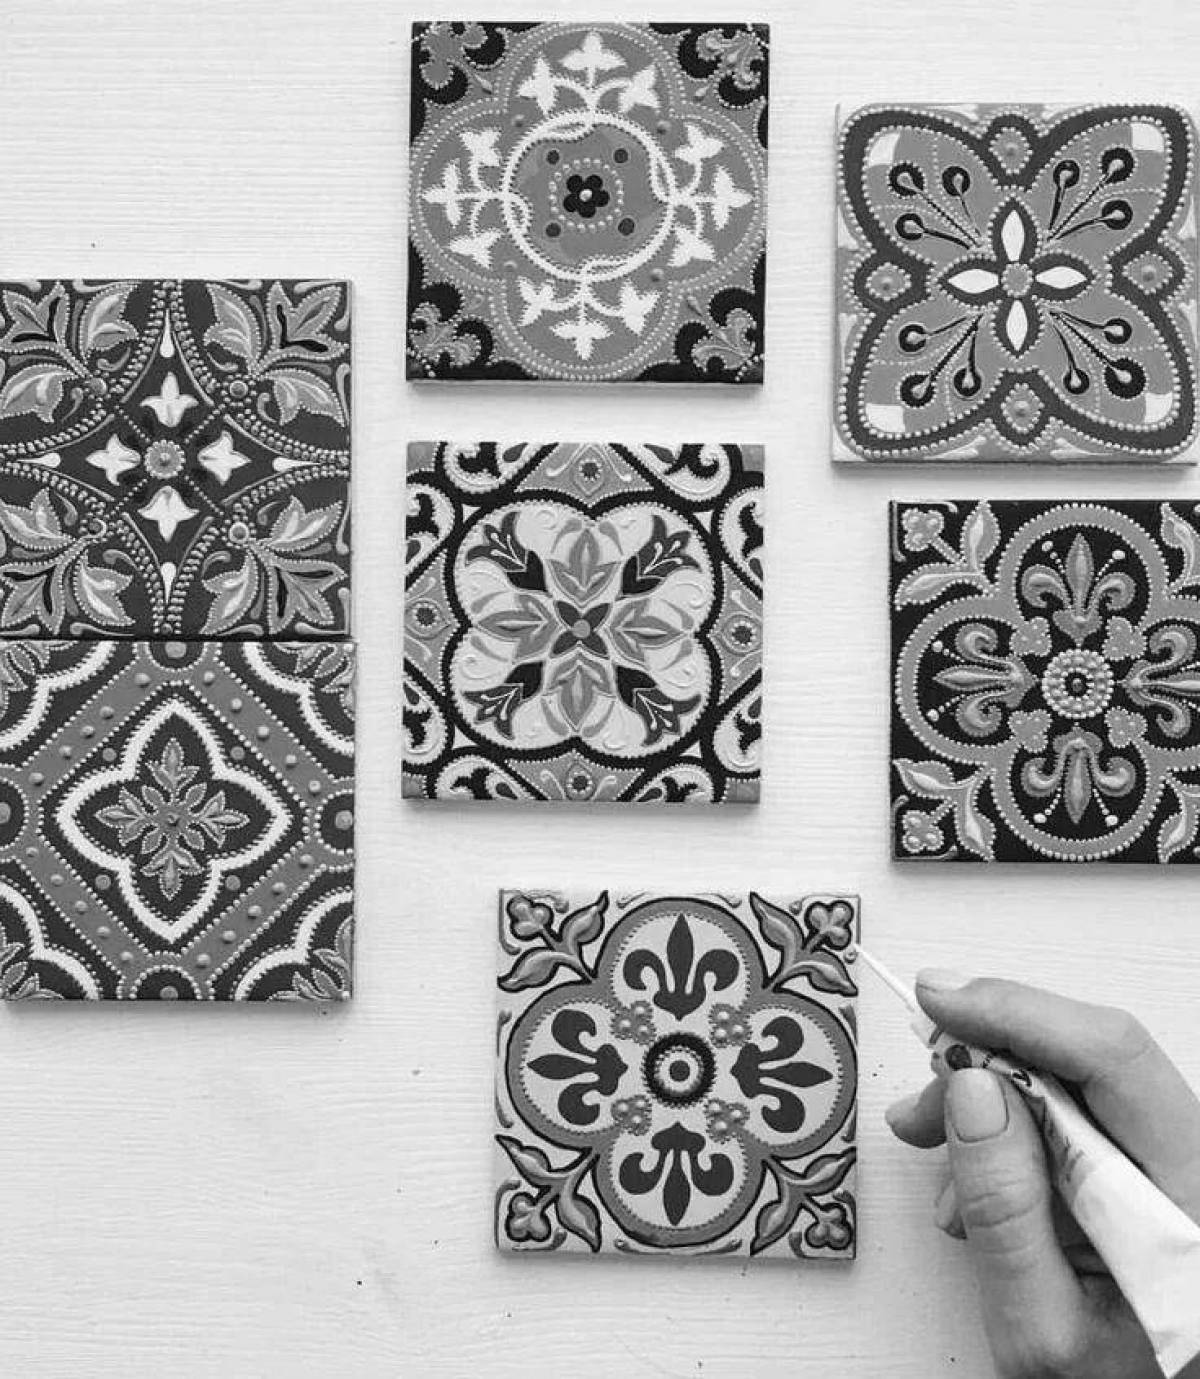 Coloring innovative ceramic tiles